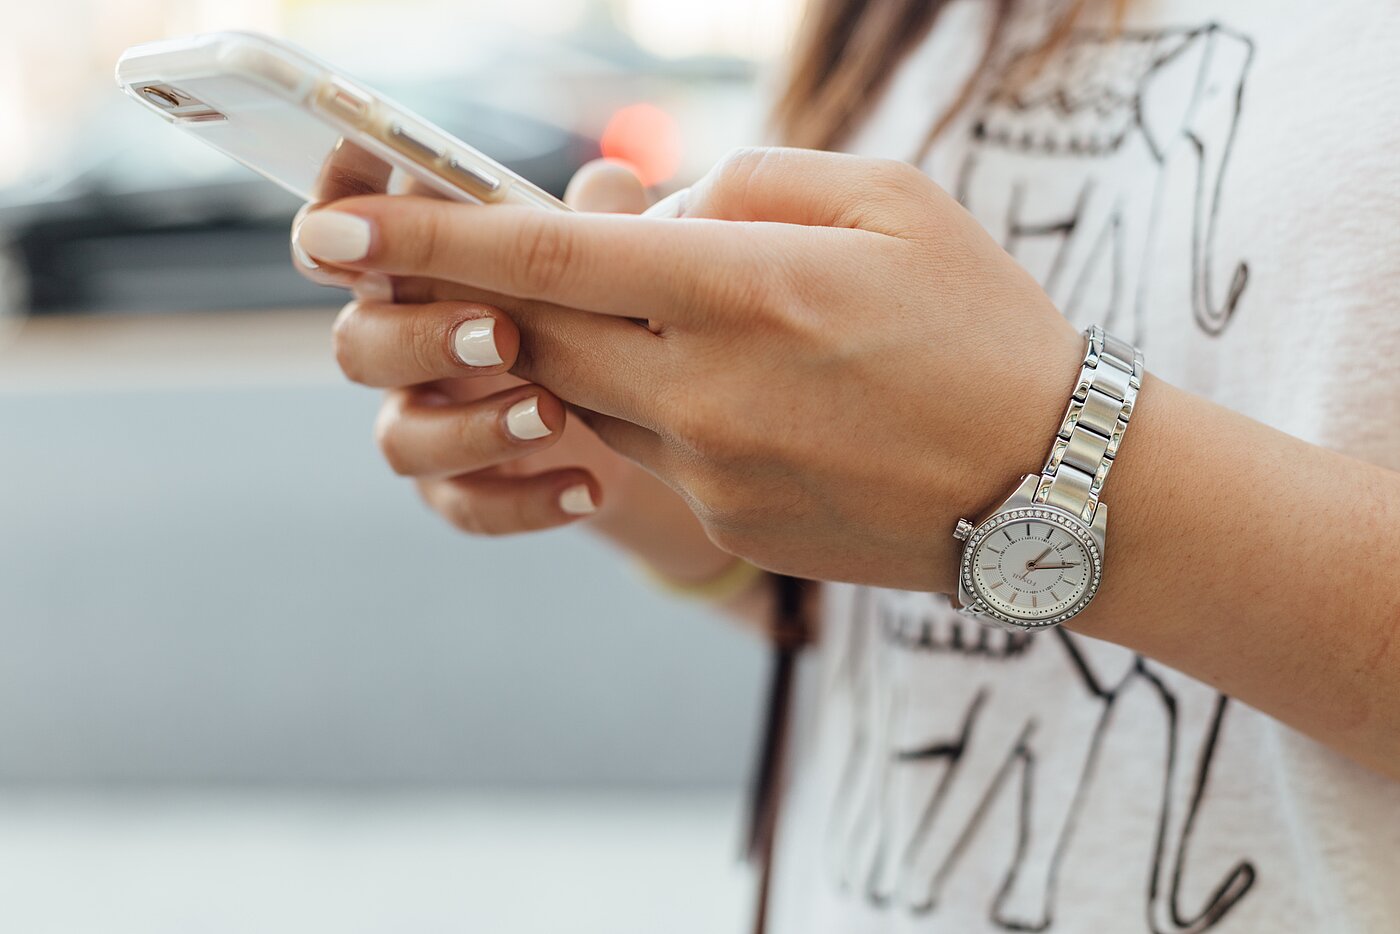 Detailfoto von Frauenhänden mit einem Smartphone